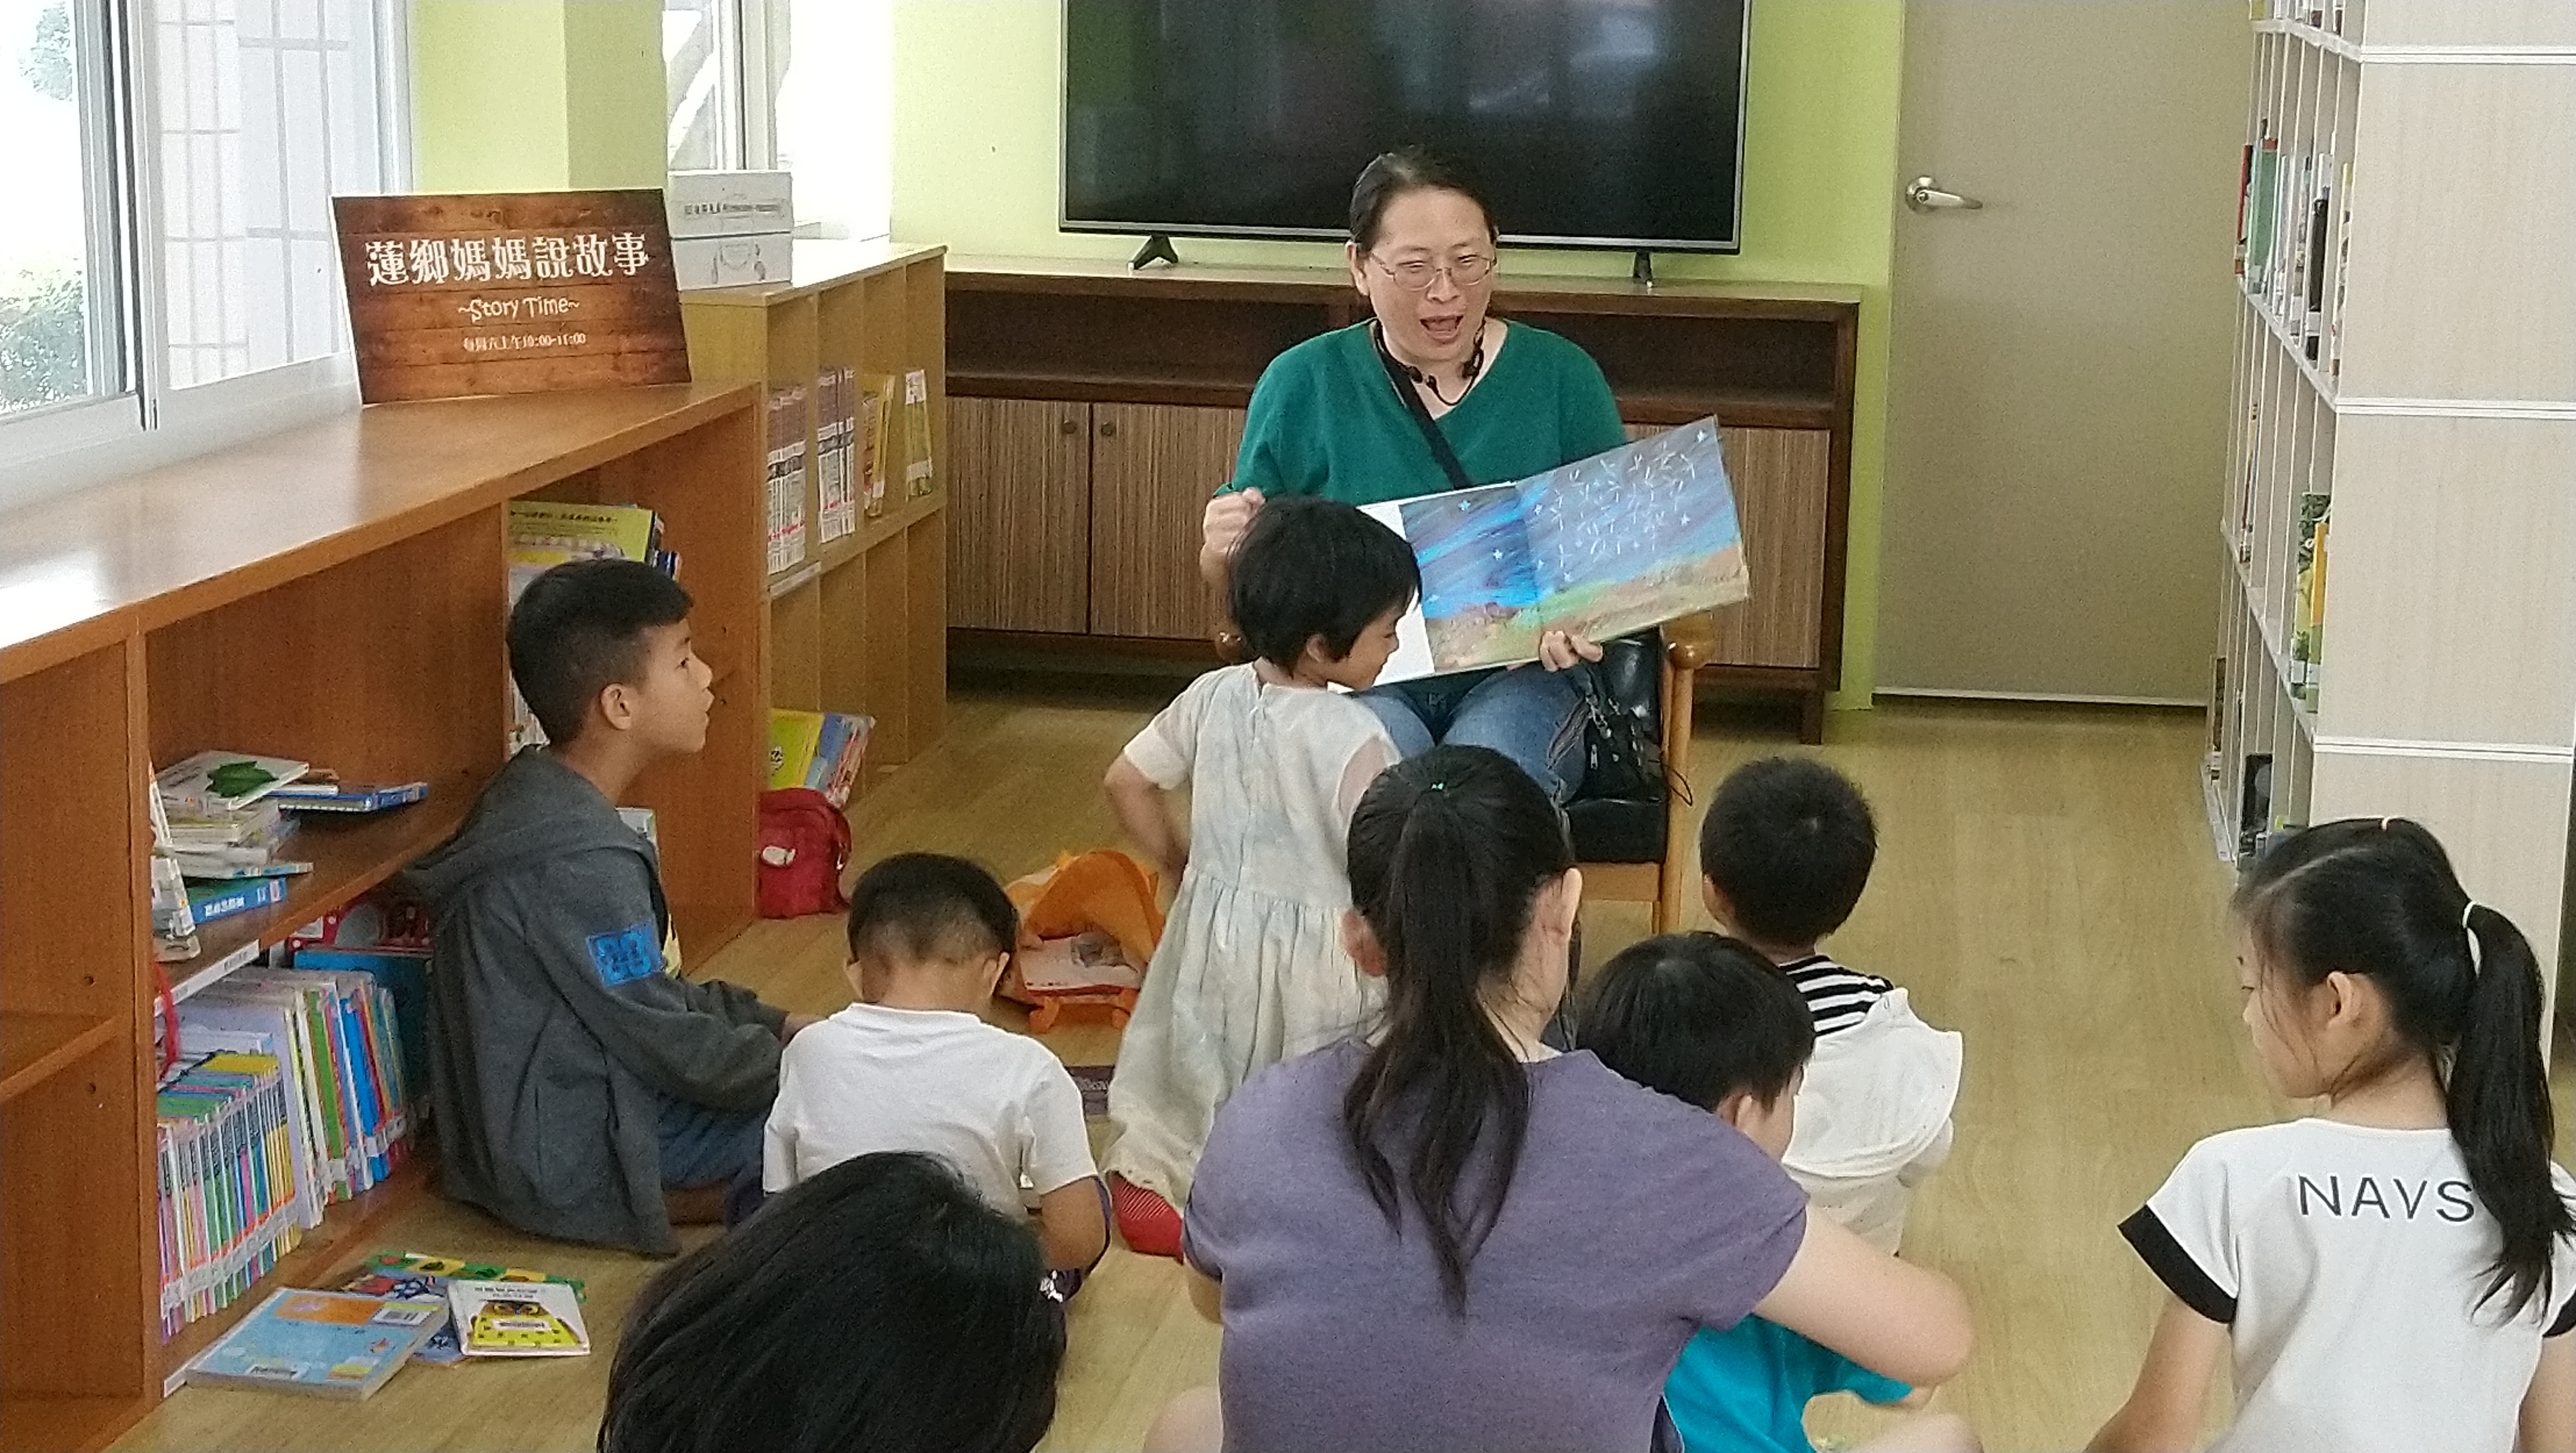 湘瑩媽媽生動活潑的說故事方式讓孩子們聽得入迷